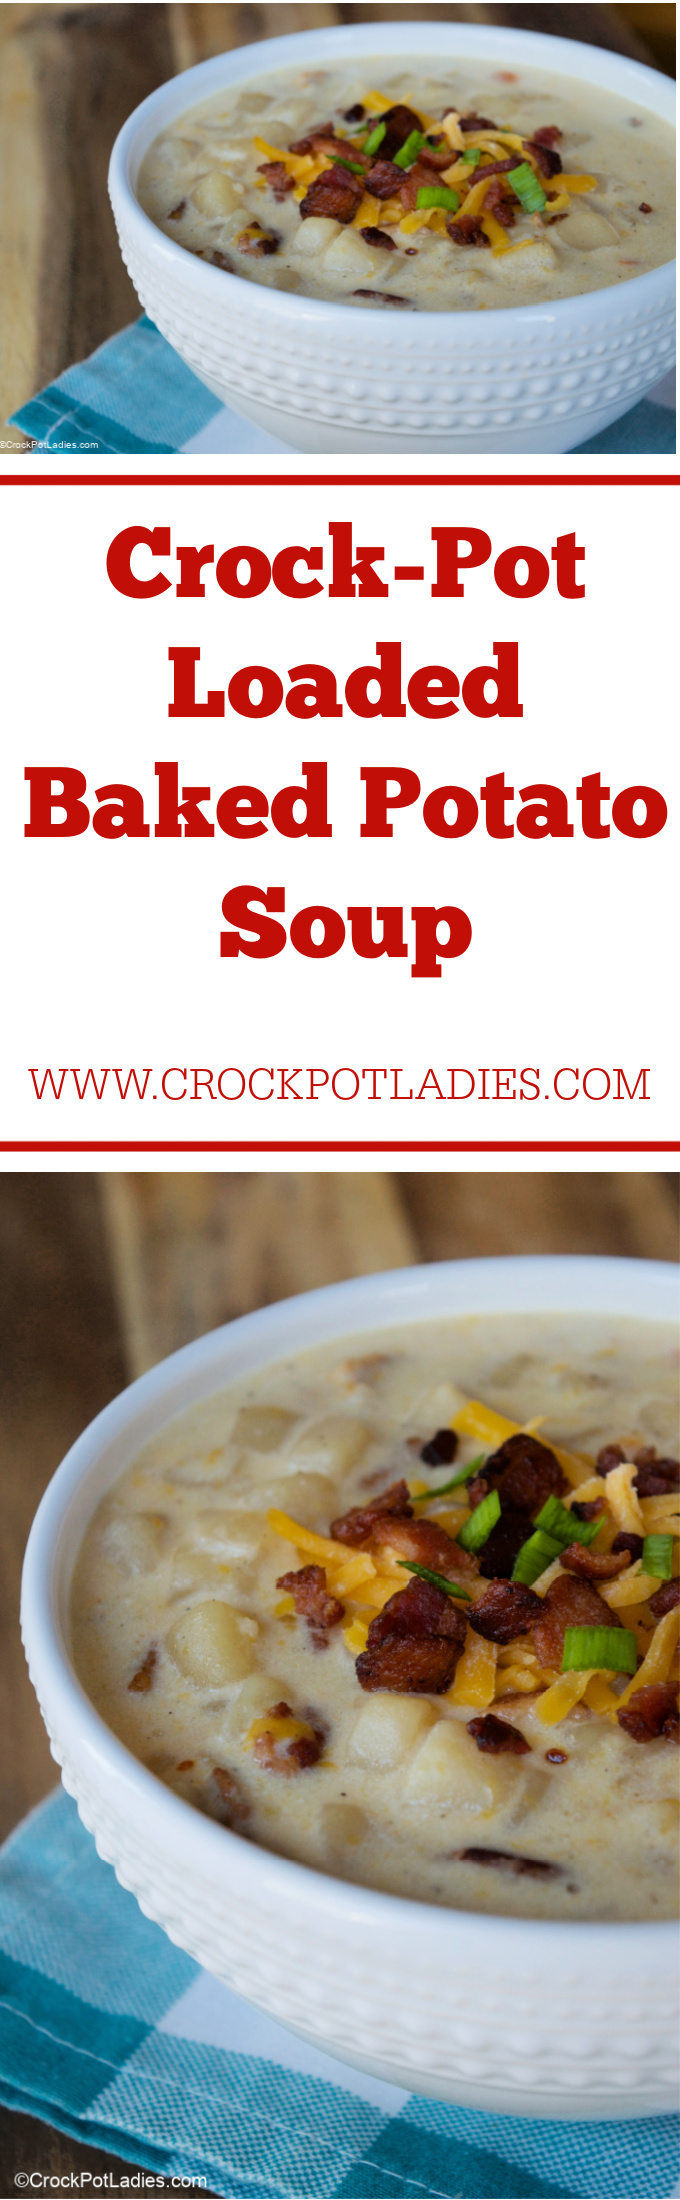 Crock-Pot Loaded Baked Potato Soup